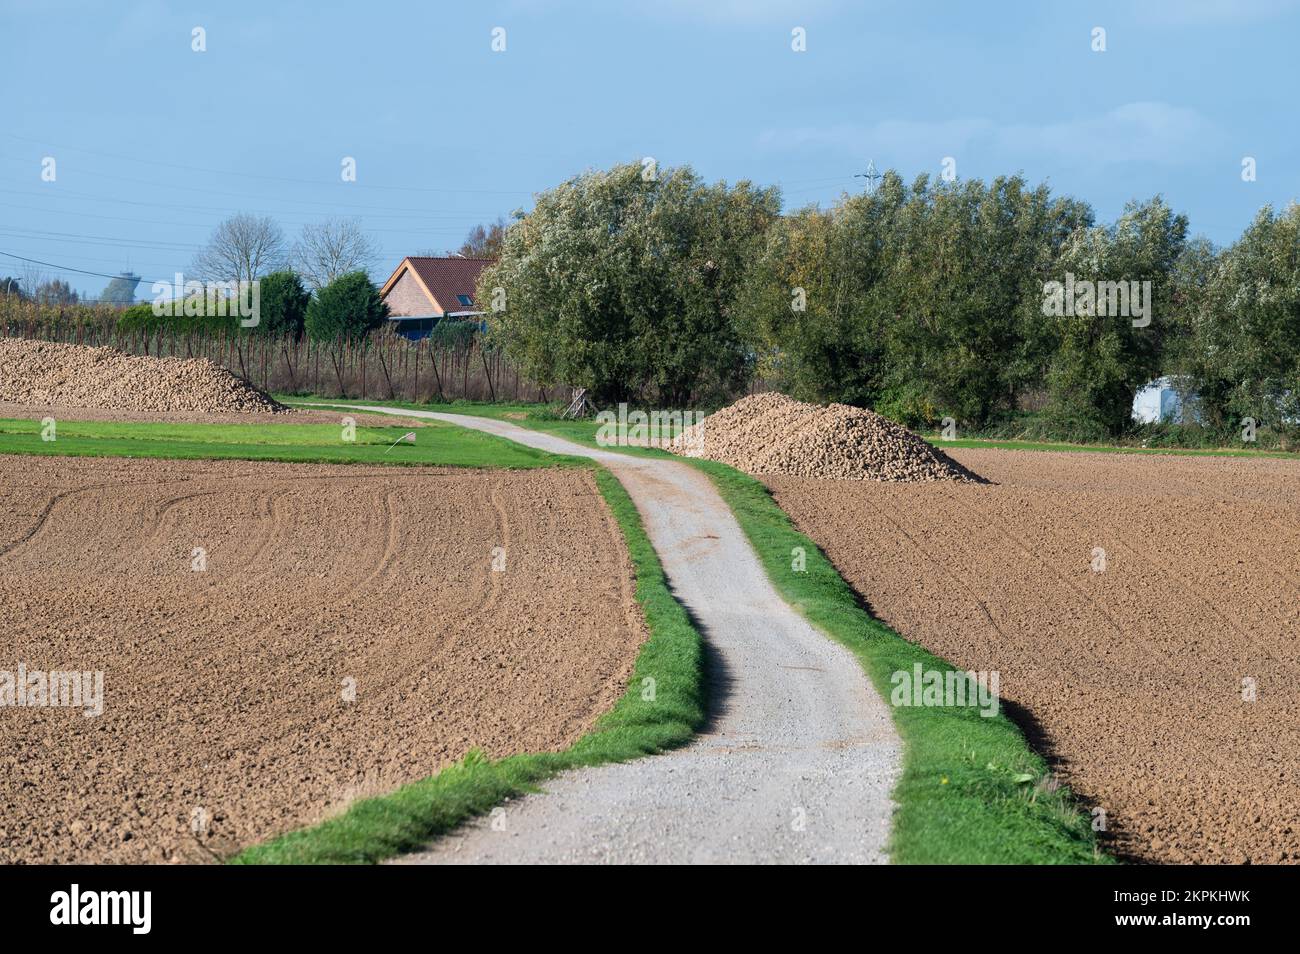 Percorso ciclabile attraverso campi agricoli con terreno marrone, colture verdi e cielo blu, Zellik, Fiandre, Belgio Foto Stock